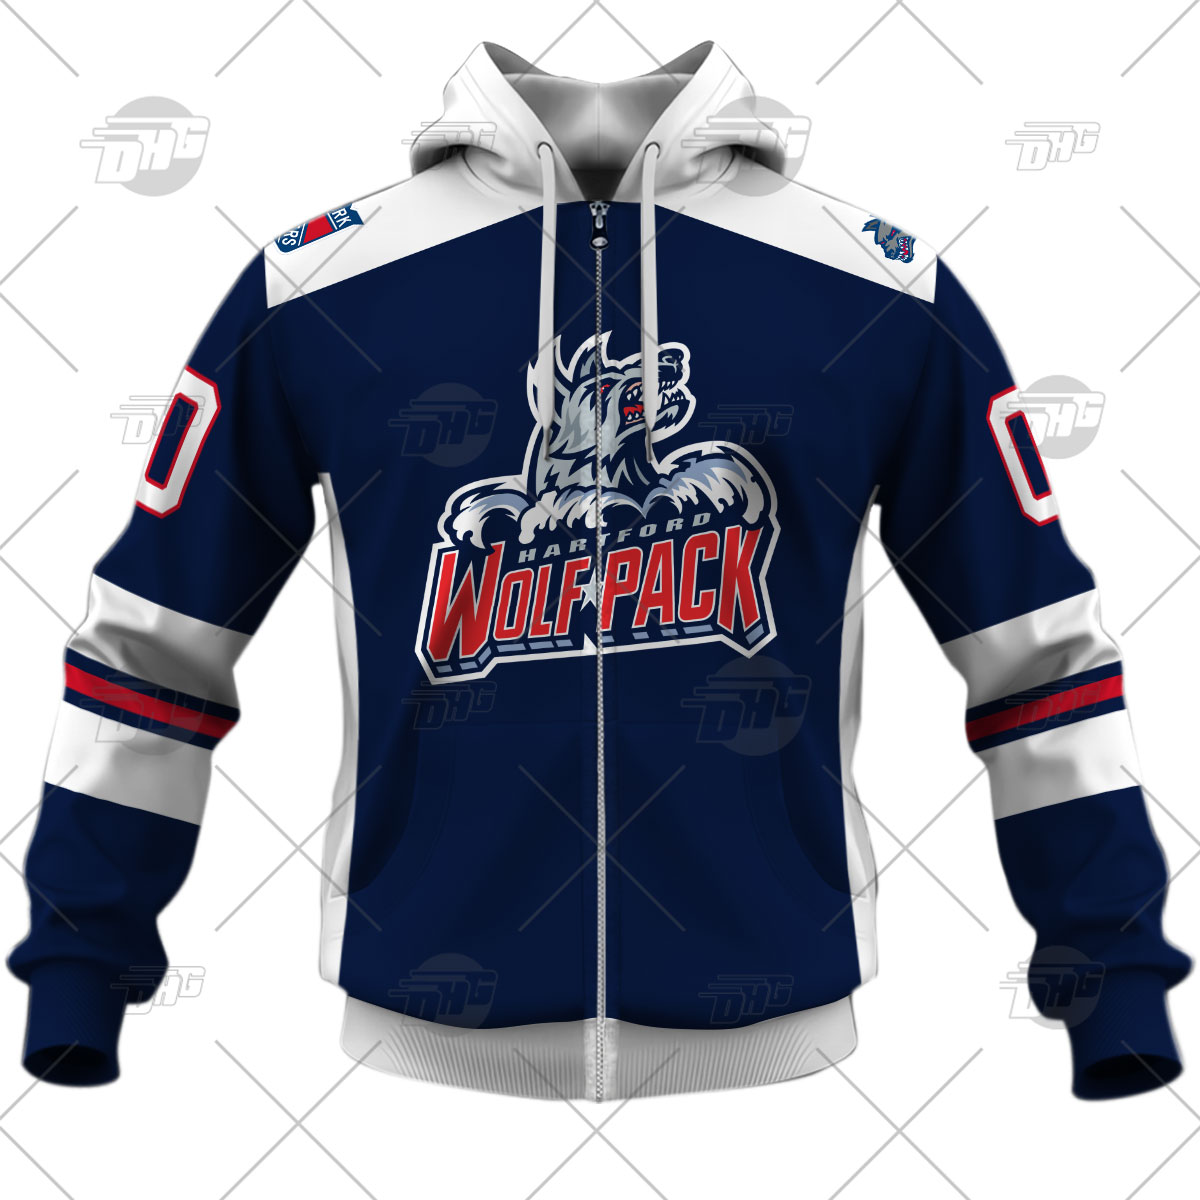 Hartford Wolf Pack Minor League Hockey Fan Jerseys for sale